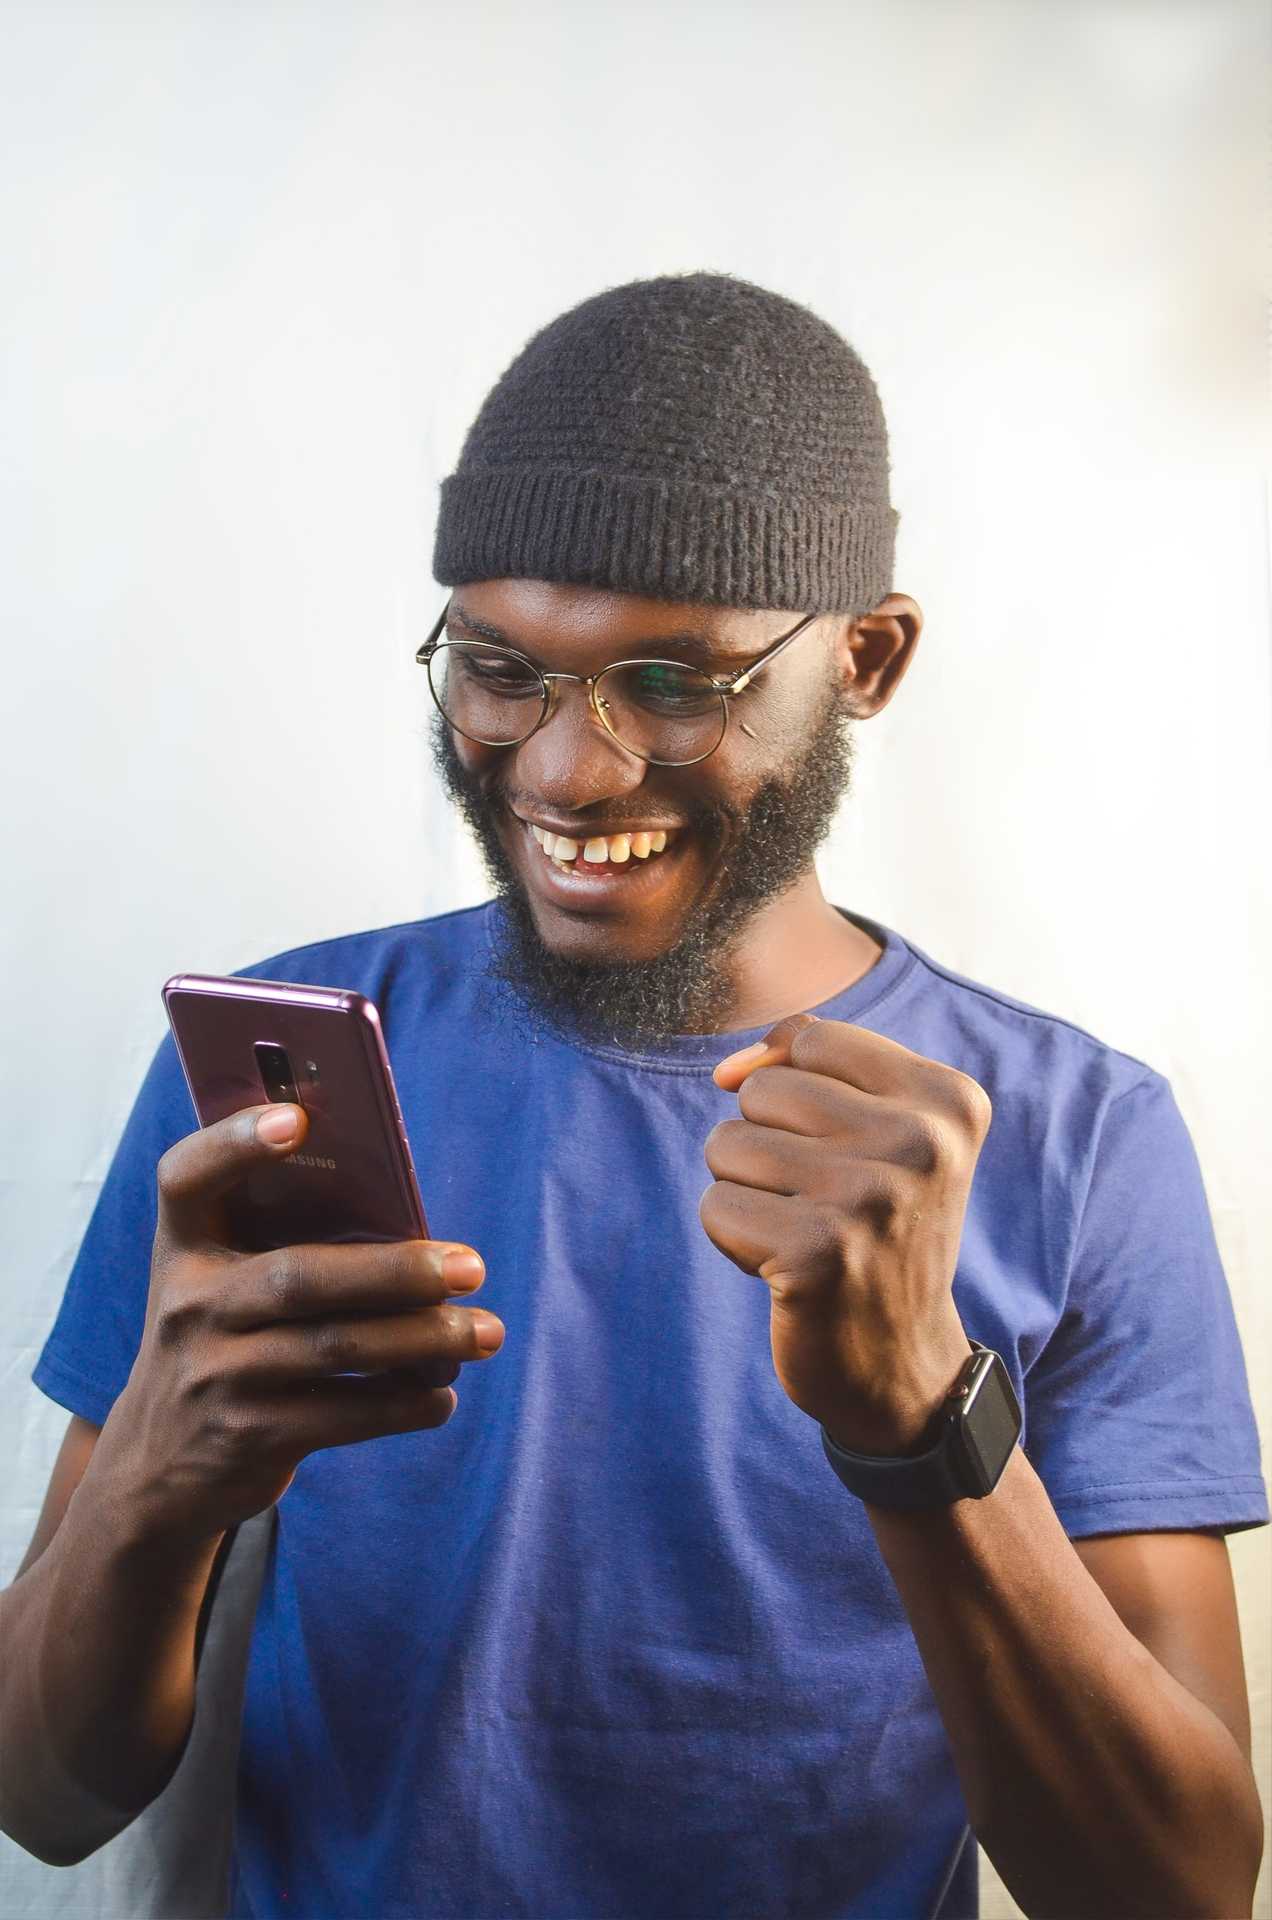 9 Best New Loan Apps in Nigeria 2022